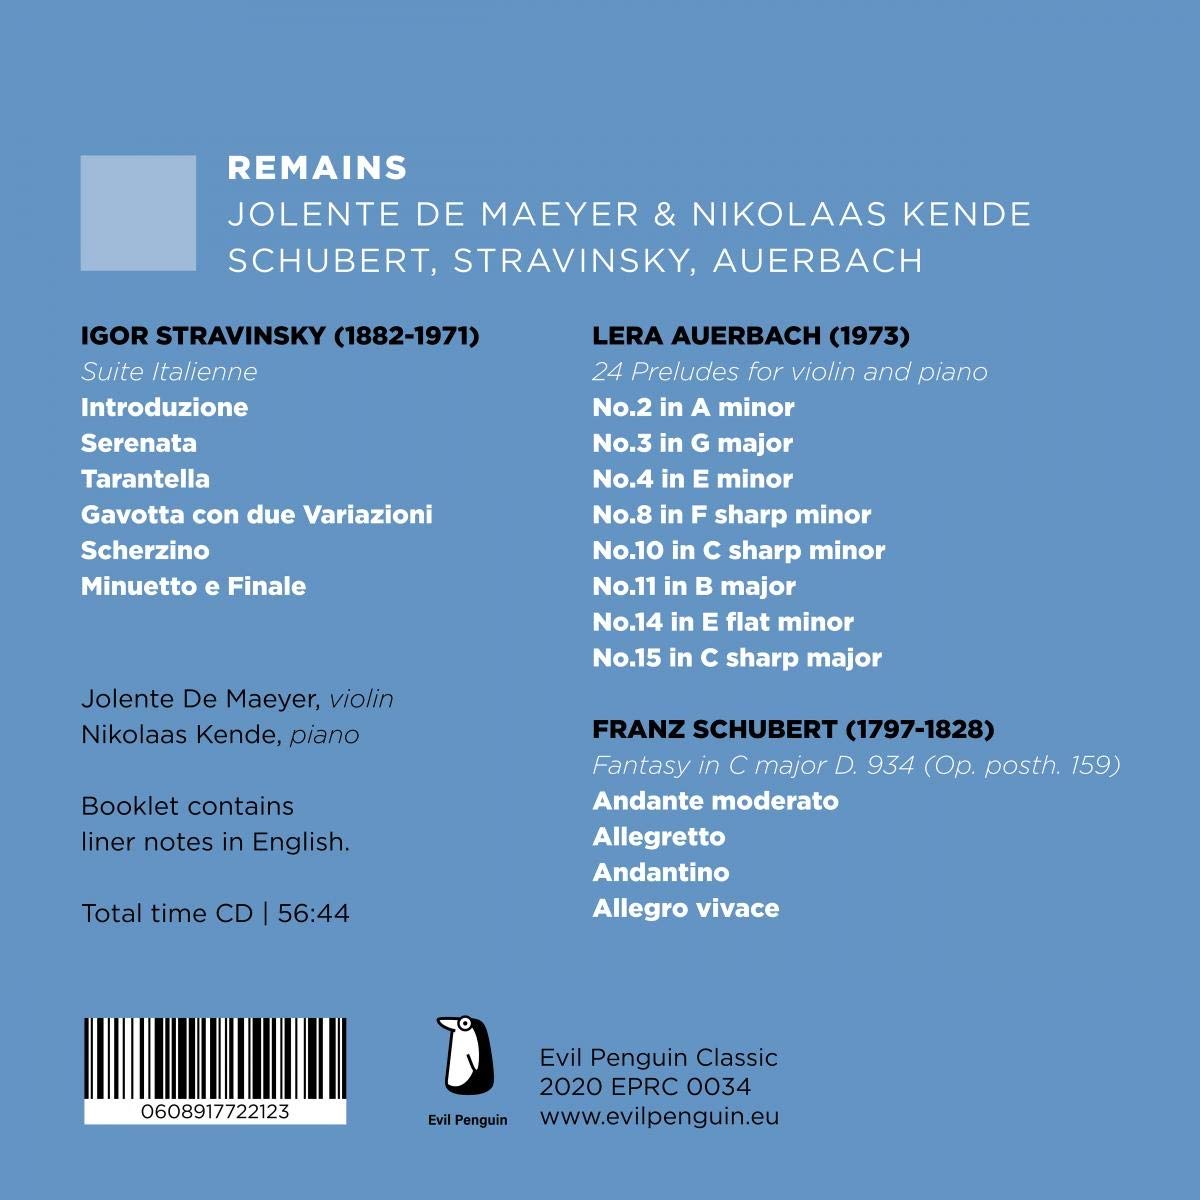 Jolente De Maeyer 스트라빈스키: 이탈리아 모음곡 / 슈베르트: 환상곡 / 아우어바흐: 24개의 전주곡